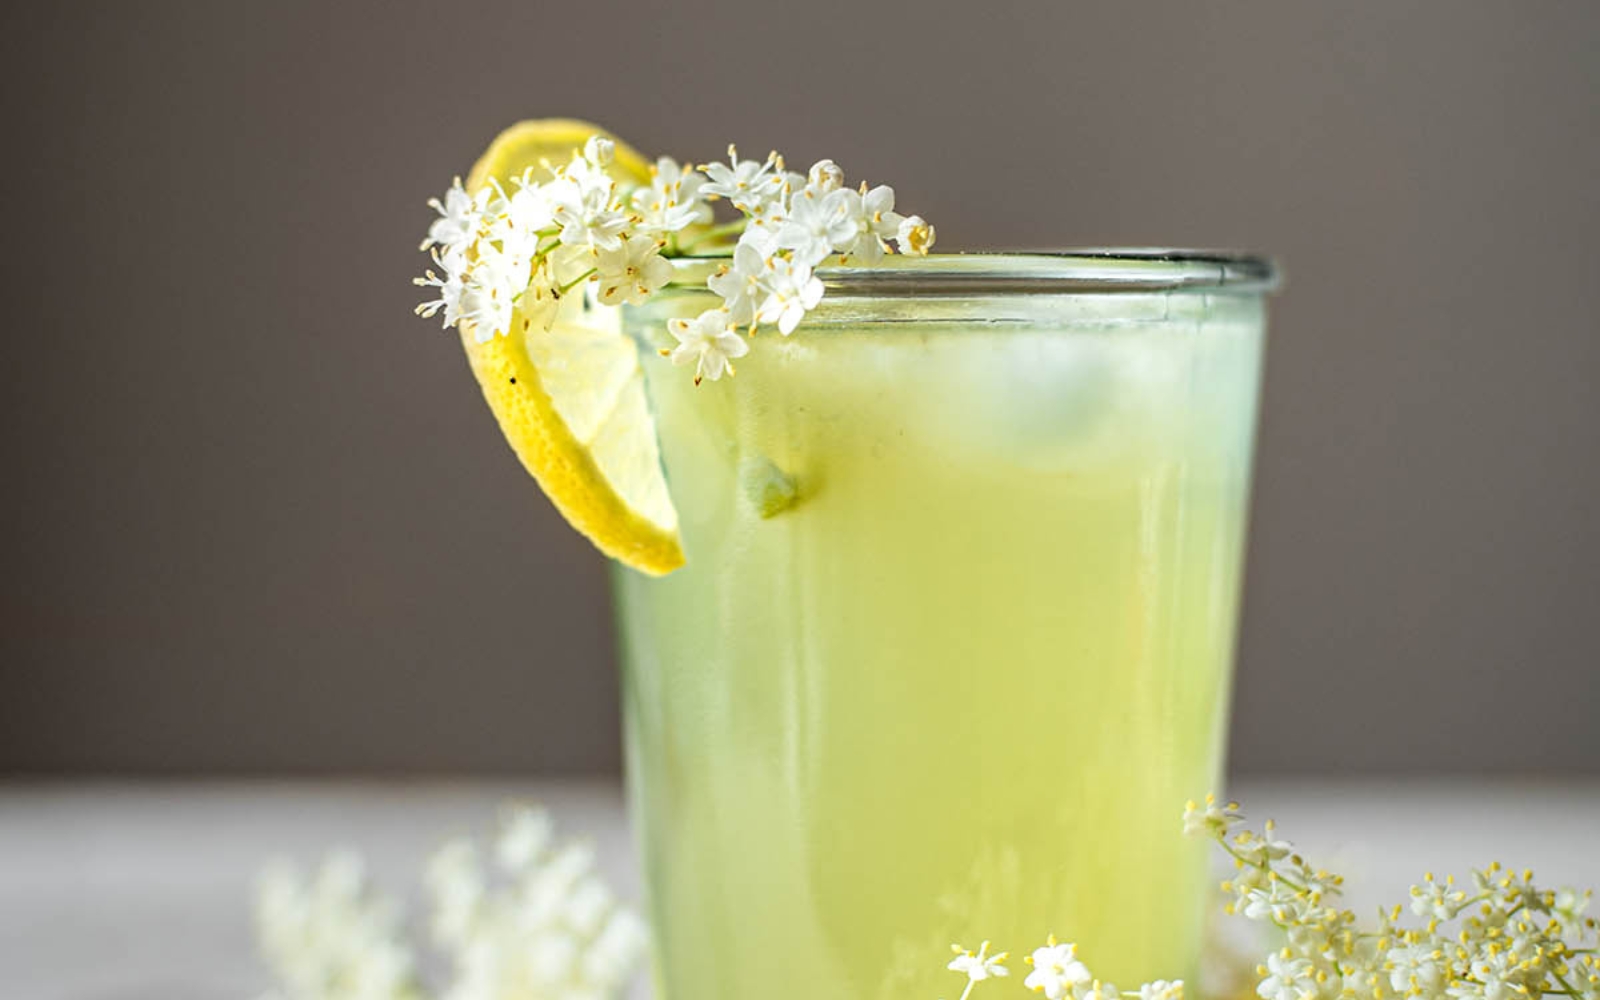 glass of elderflower lemonade with lemon slice and elderflower blossoms